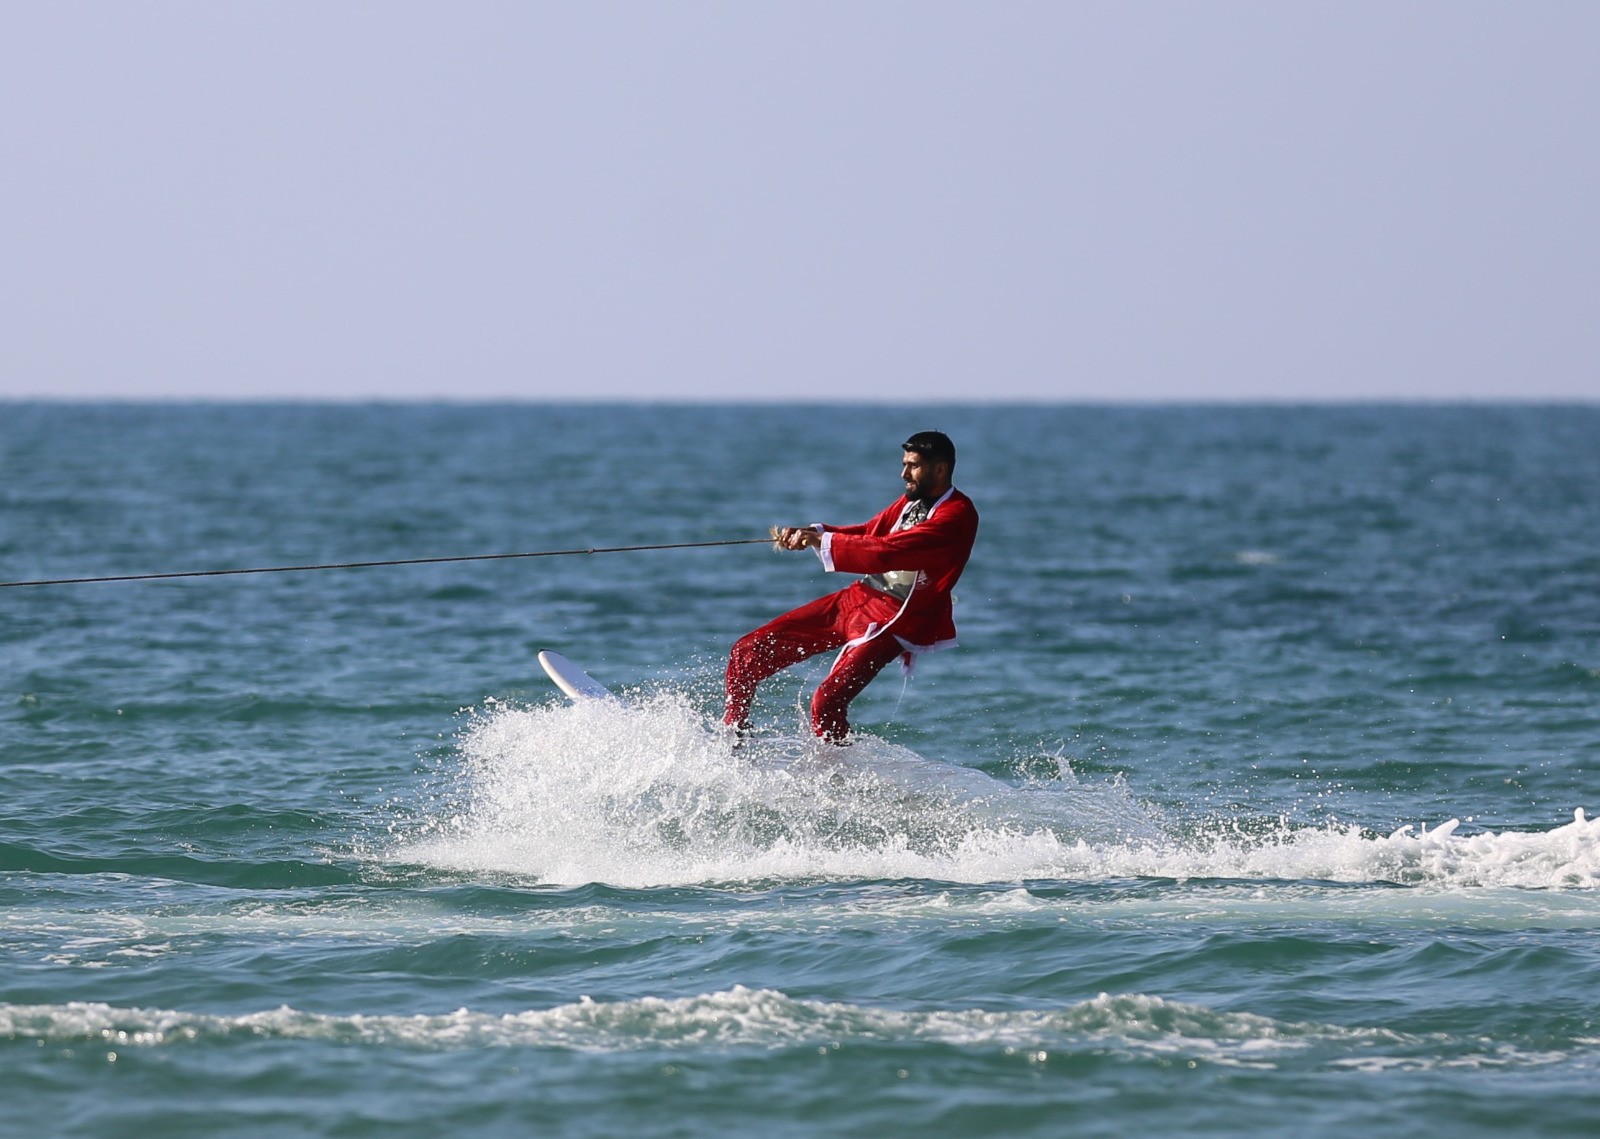 الاتحاد الفلسطيني للشراع والتجديف ينظّم فعالية للتزلّج على شاطئ بحر غزّة 6.jpg